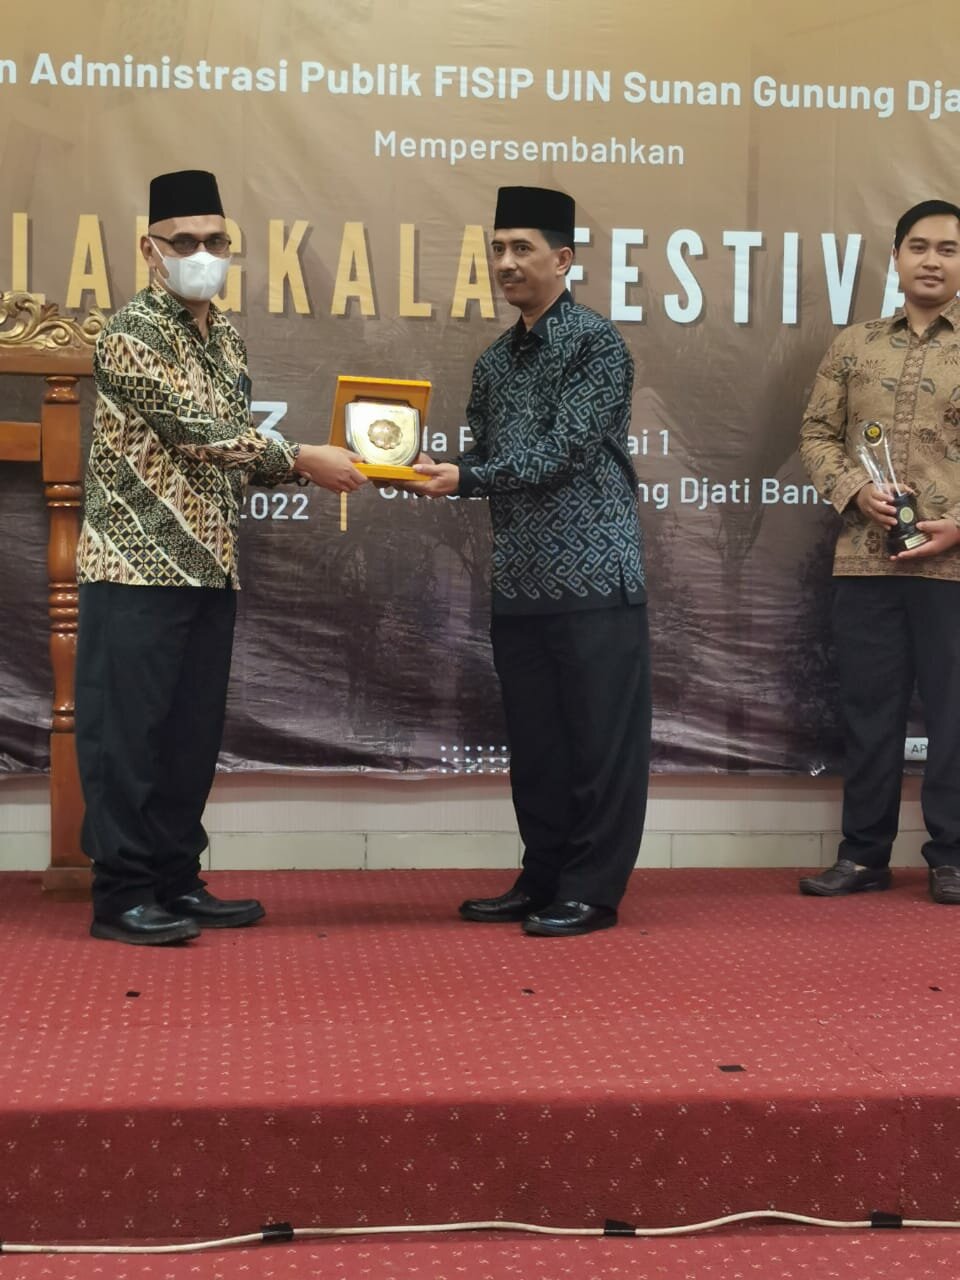 Kemenag Kab. Indramayu terpilih sebagai Tata Kelola Administrasi Terbaik oleh UIN Bandung